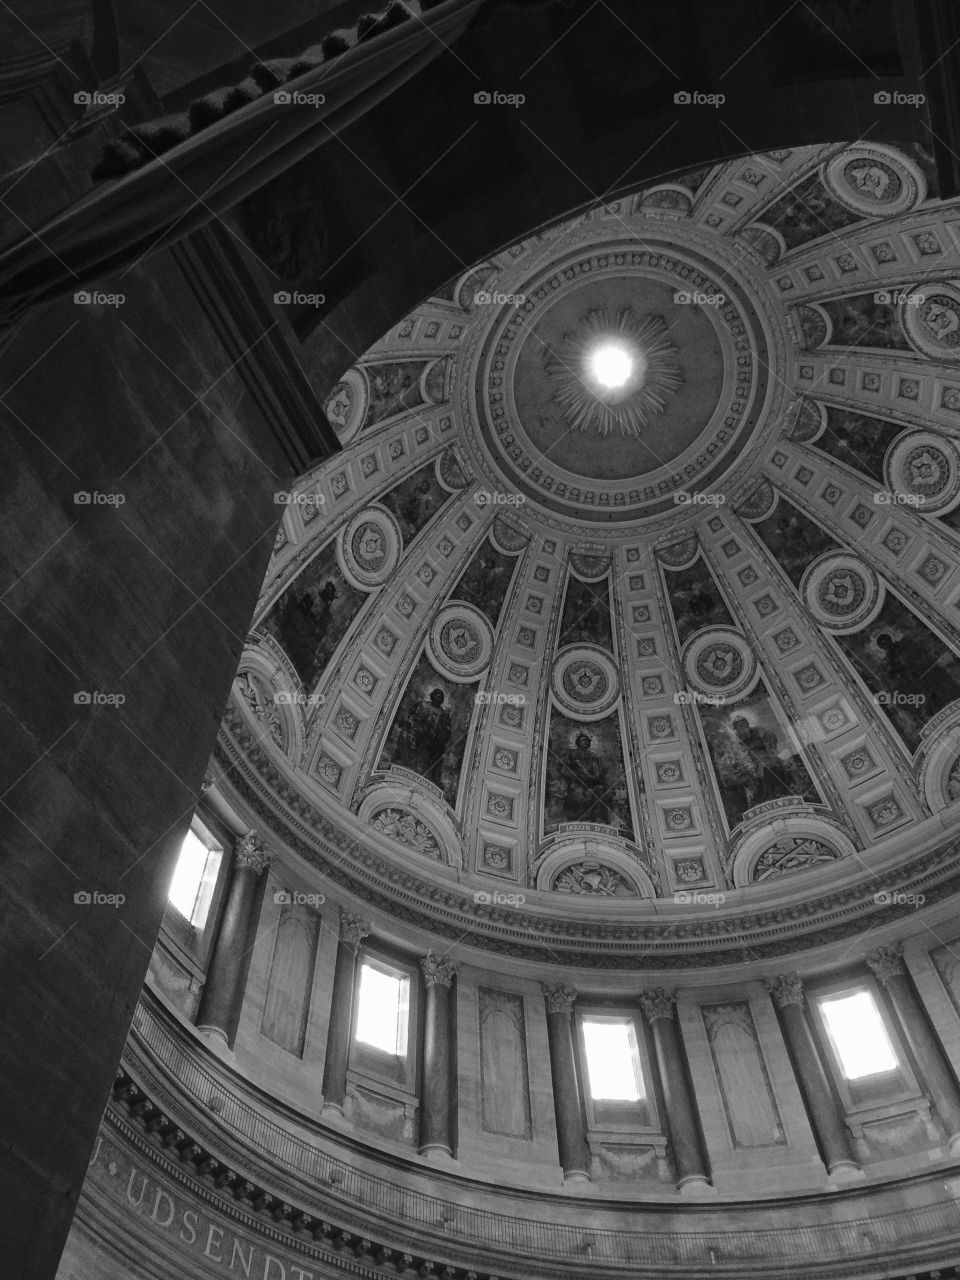 Some. Interior dome in church